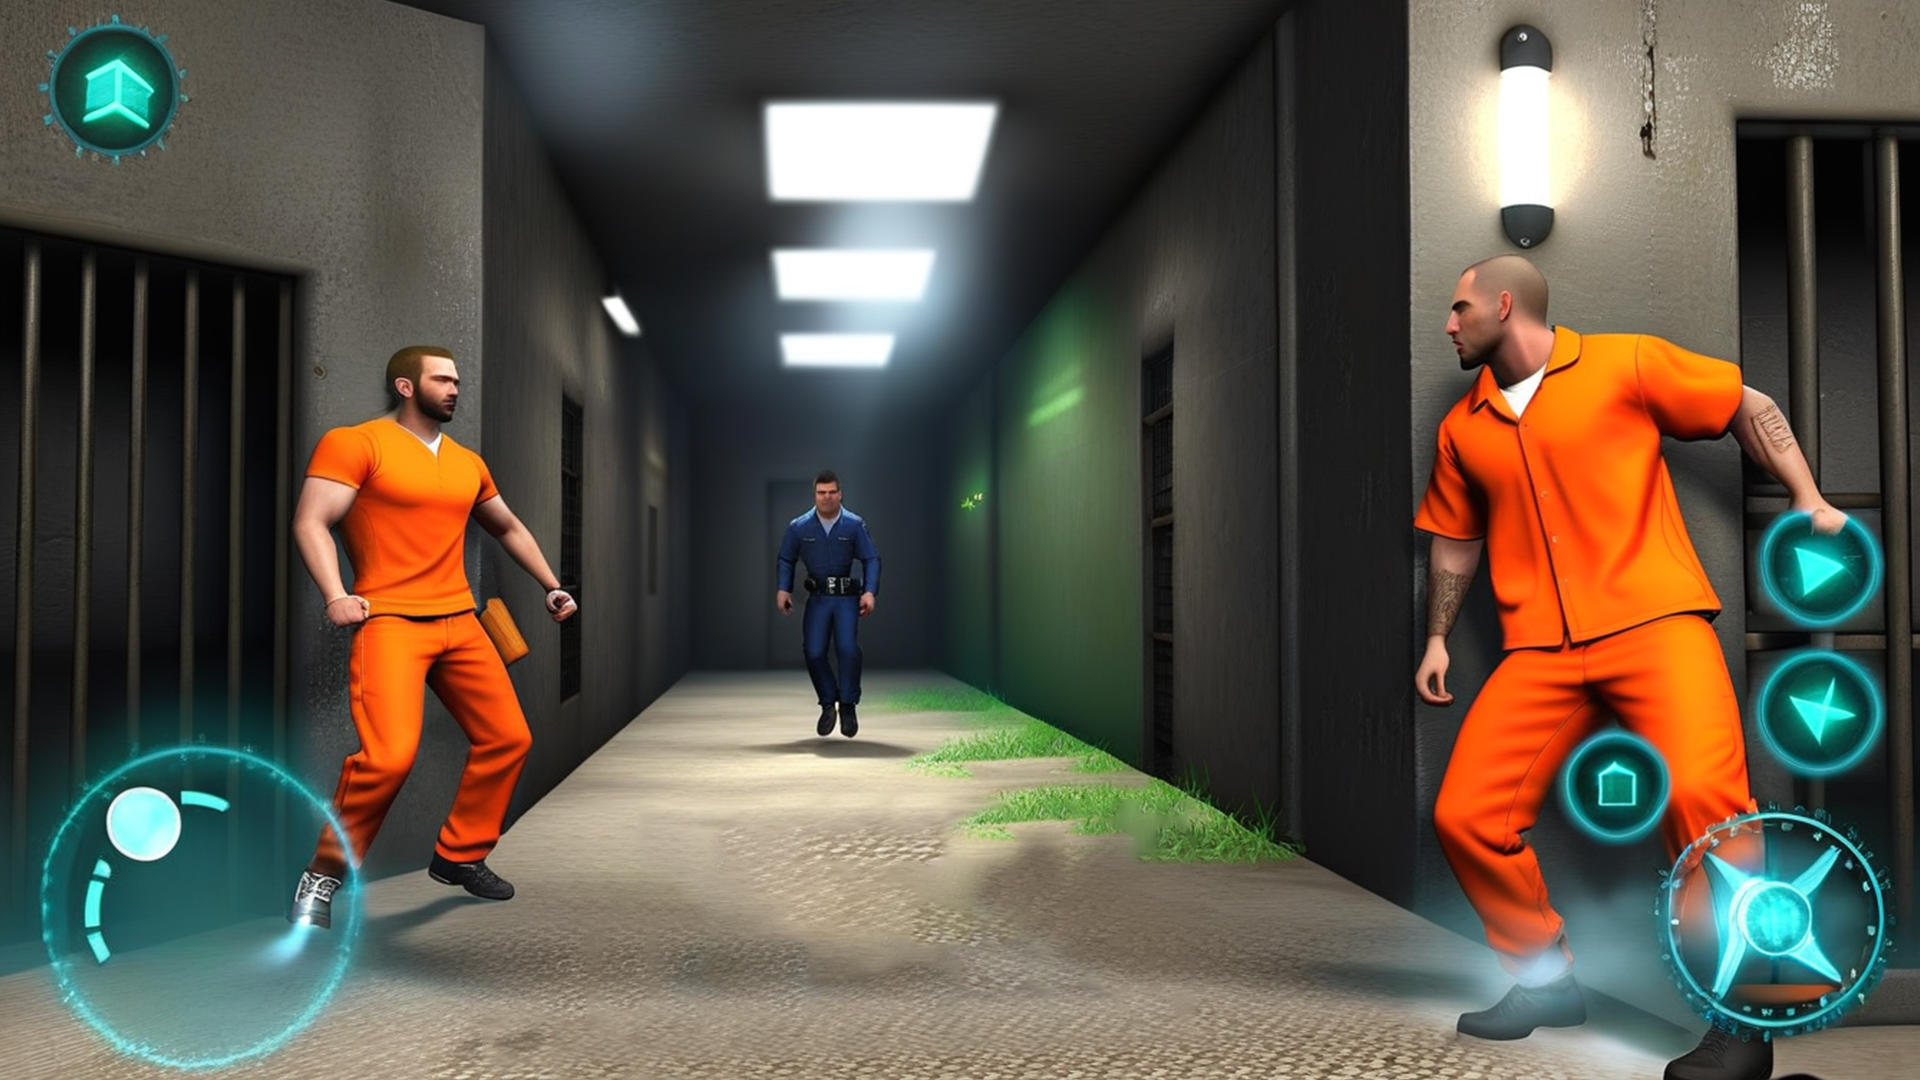 Prison Escape Grand Jail Survival Simulator Missions Games – Grand